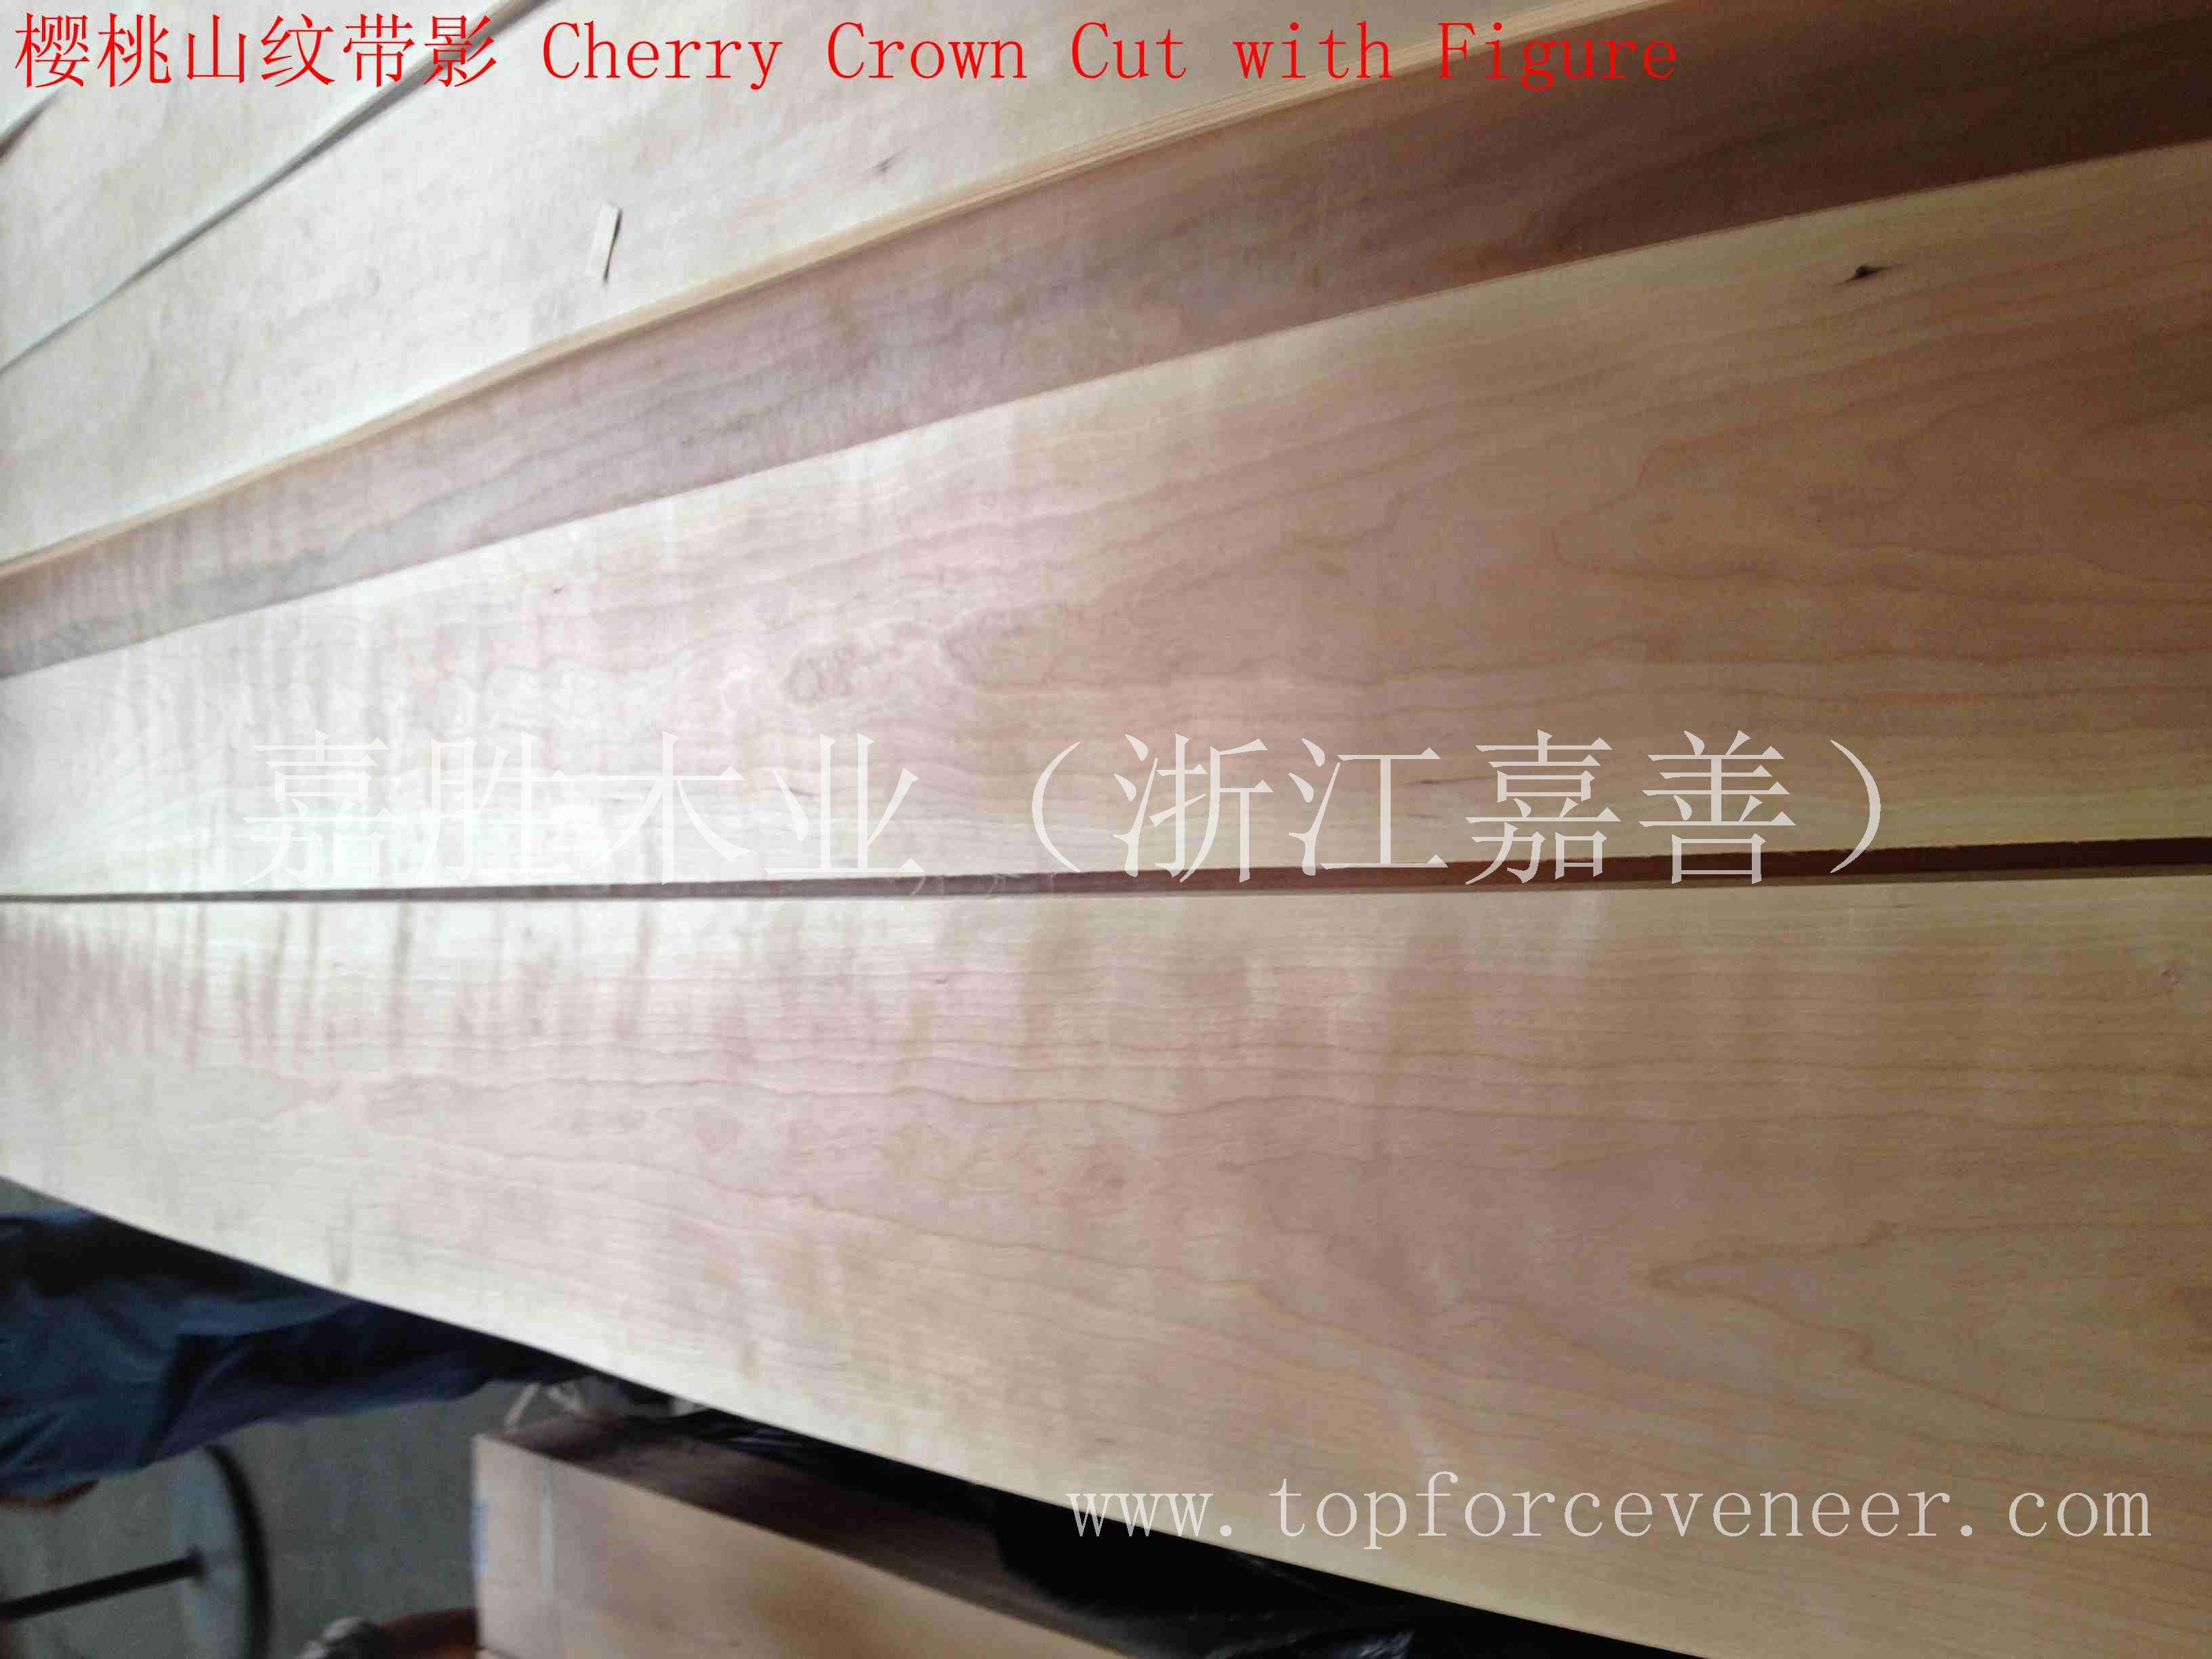 上海美国樱桃小顺花木皮-ShangHai American Black Cherry Cathydral Veneer Architecture Grade 嘉胜木业(